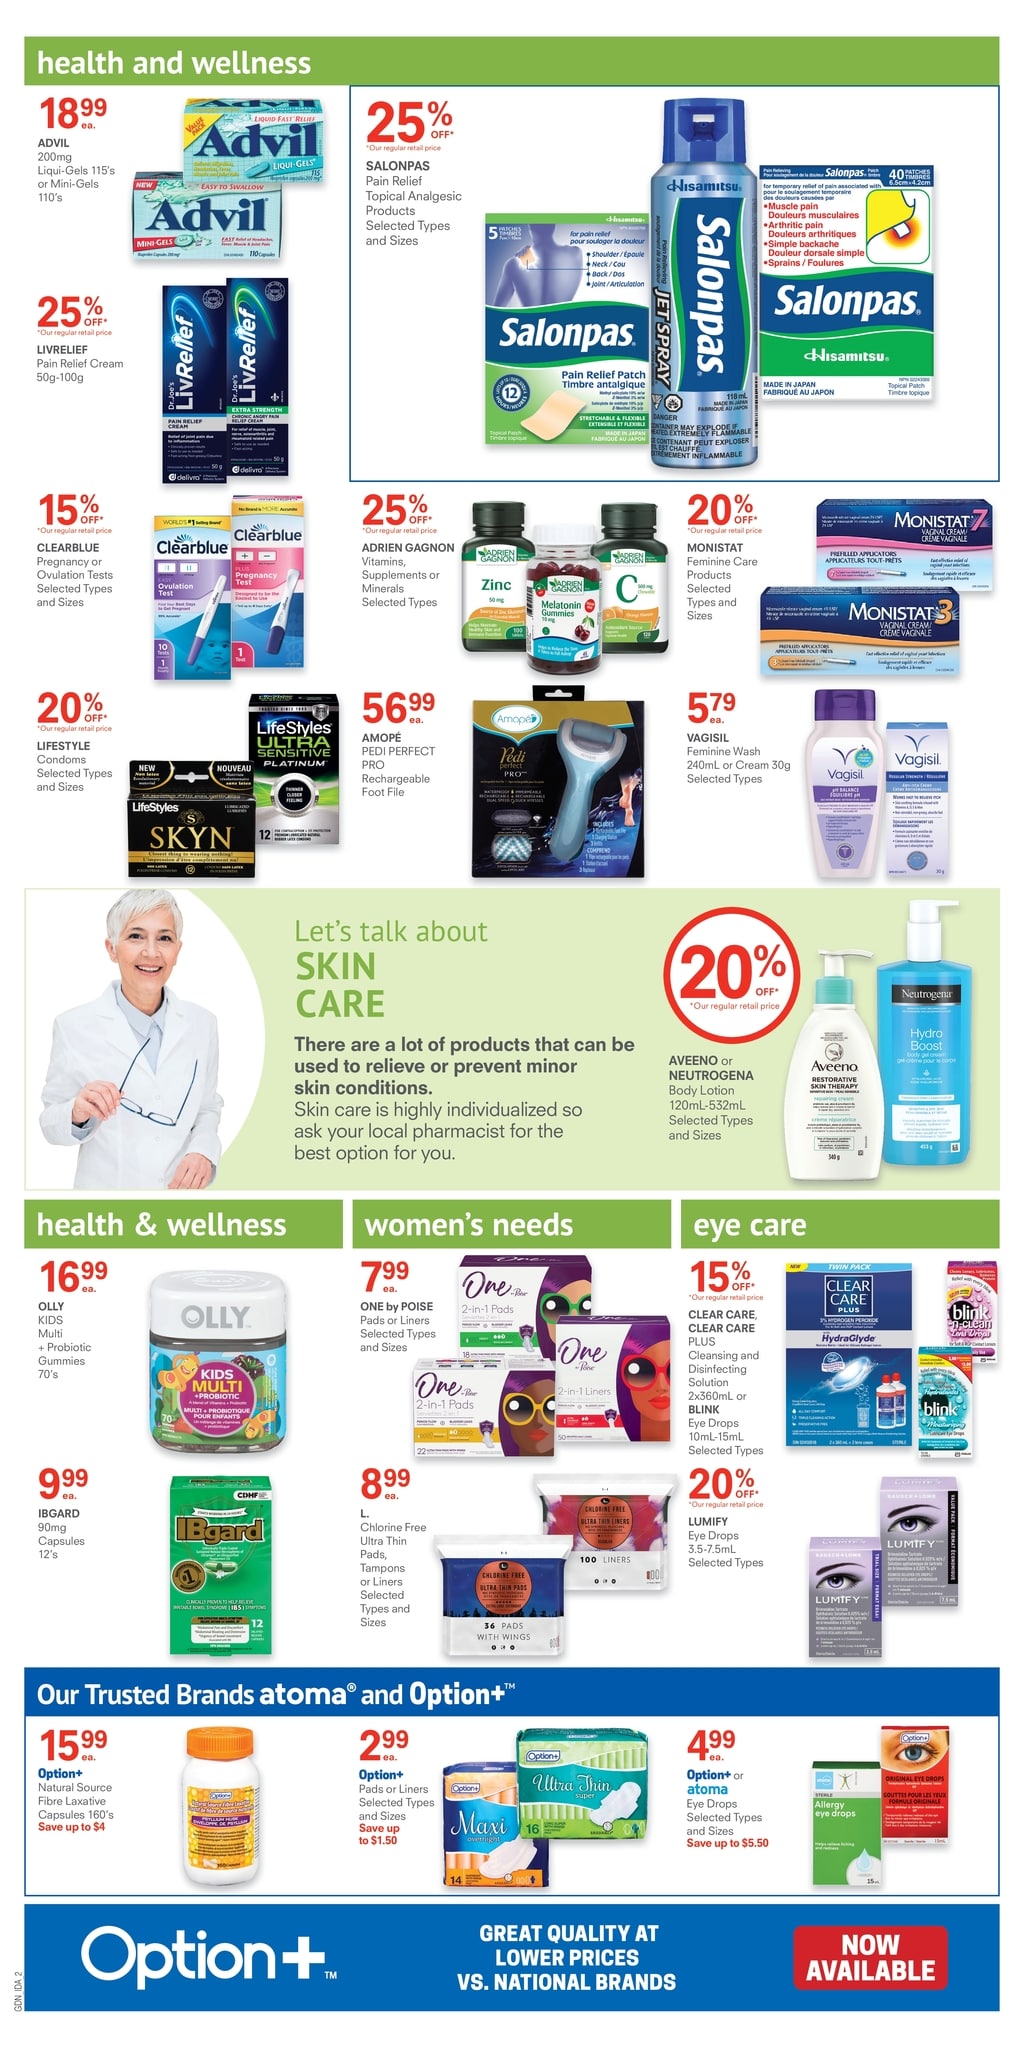 Guardian IDA Pharmacies - Weekly Flyer Specials - Page 3